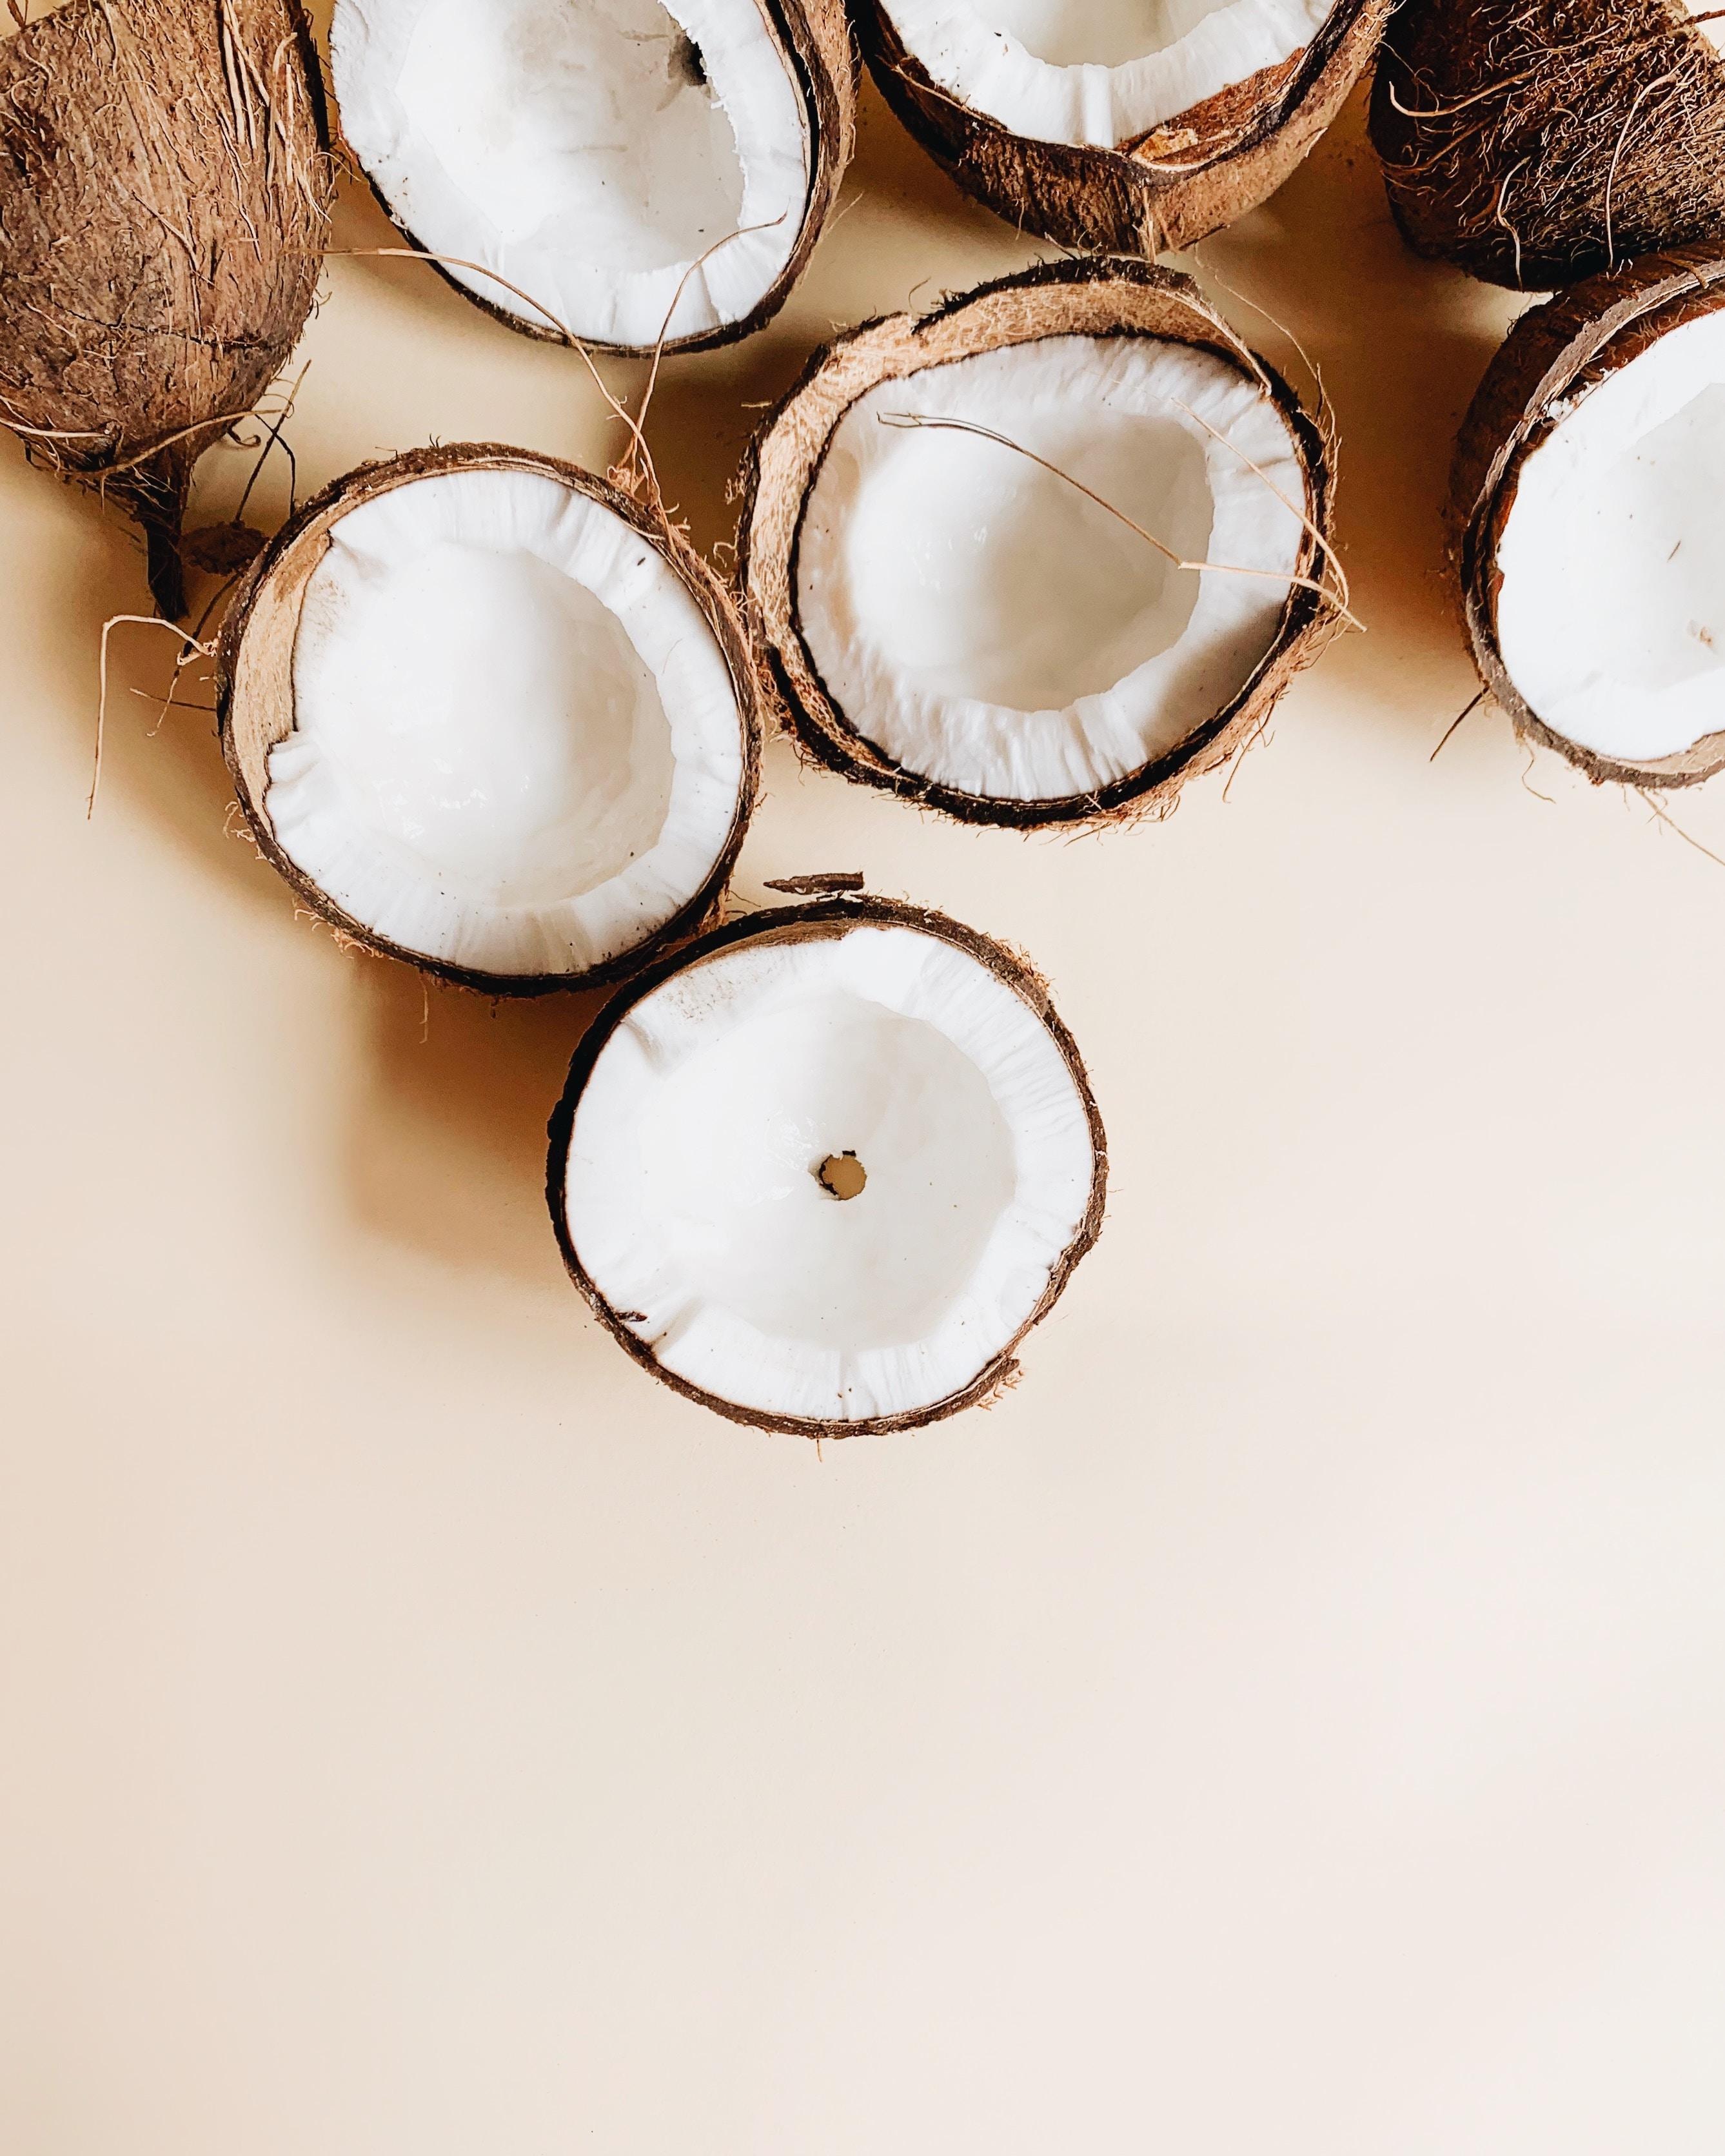 Kokos - czy jest zdrowy? Właściwości miąższu kokosa i nie tylko. Orzech kokosowy — właściwości i wartości odżywcze. Kokos - charakterystyka - właściwości zdrowotne i odżywcze